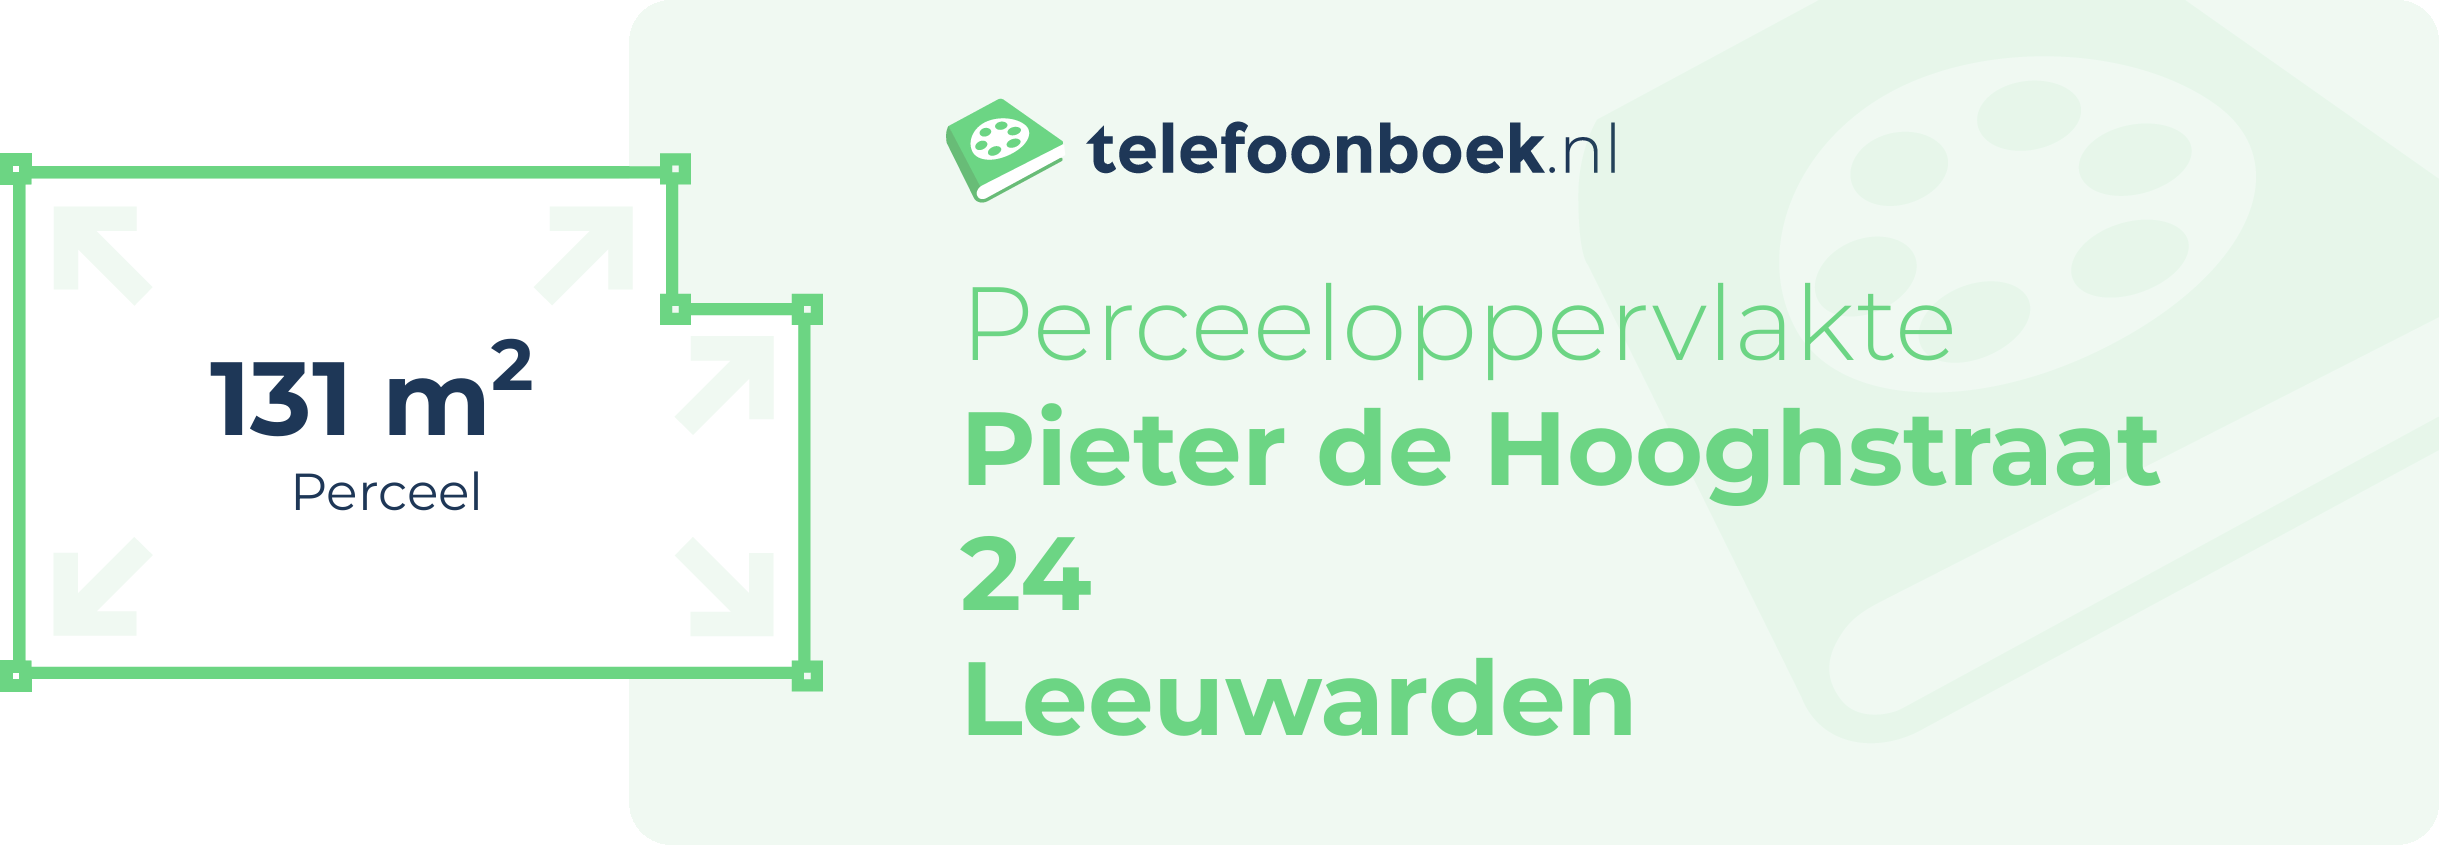 Perceeloppervlakte Pieter De Hooghstraat 24 Leeuwarden